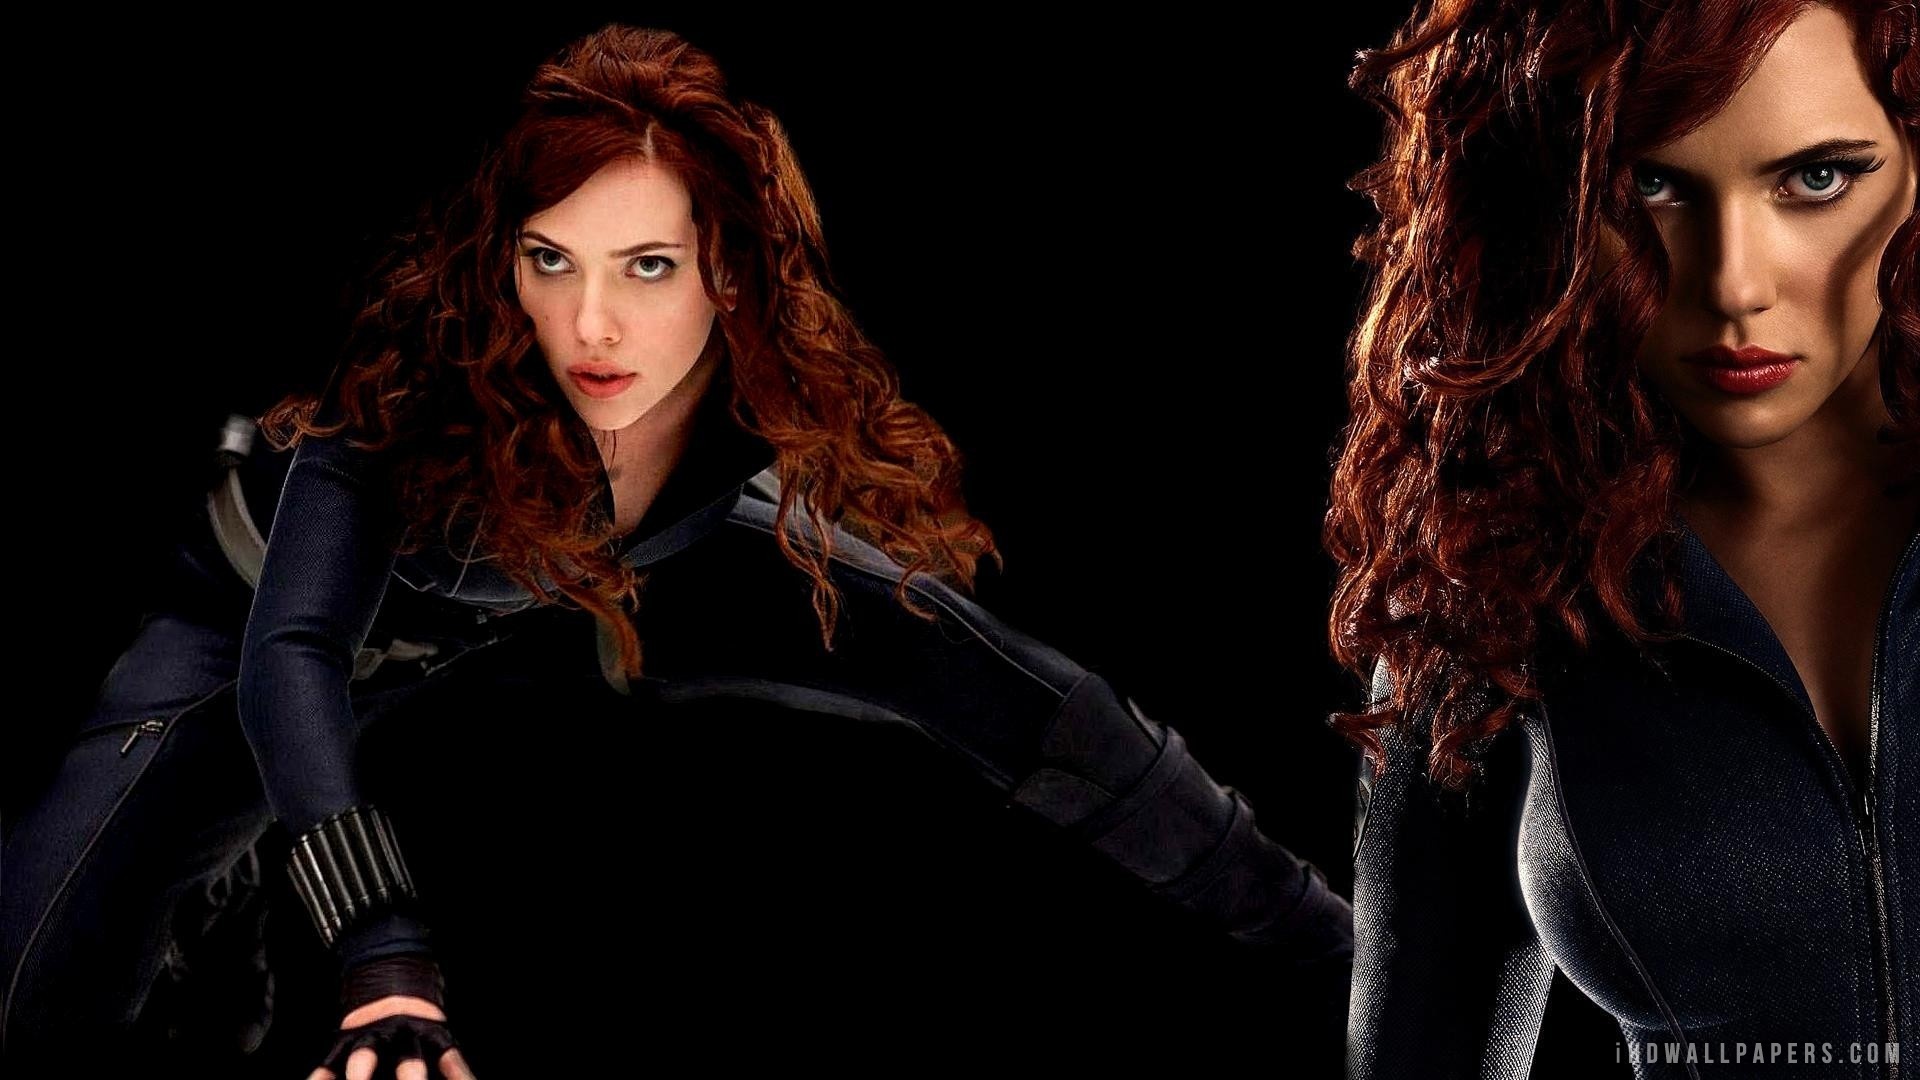 Scarlett Johansson as Black Widow HD Wallpaper   iHD Wallpapers